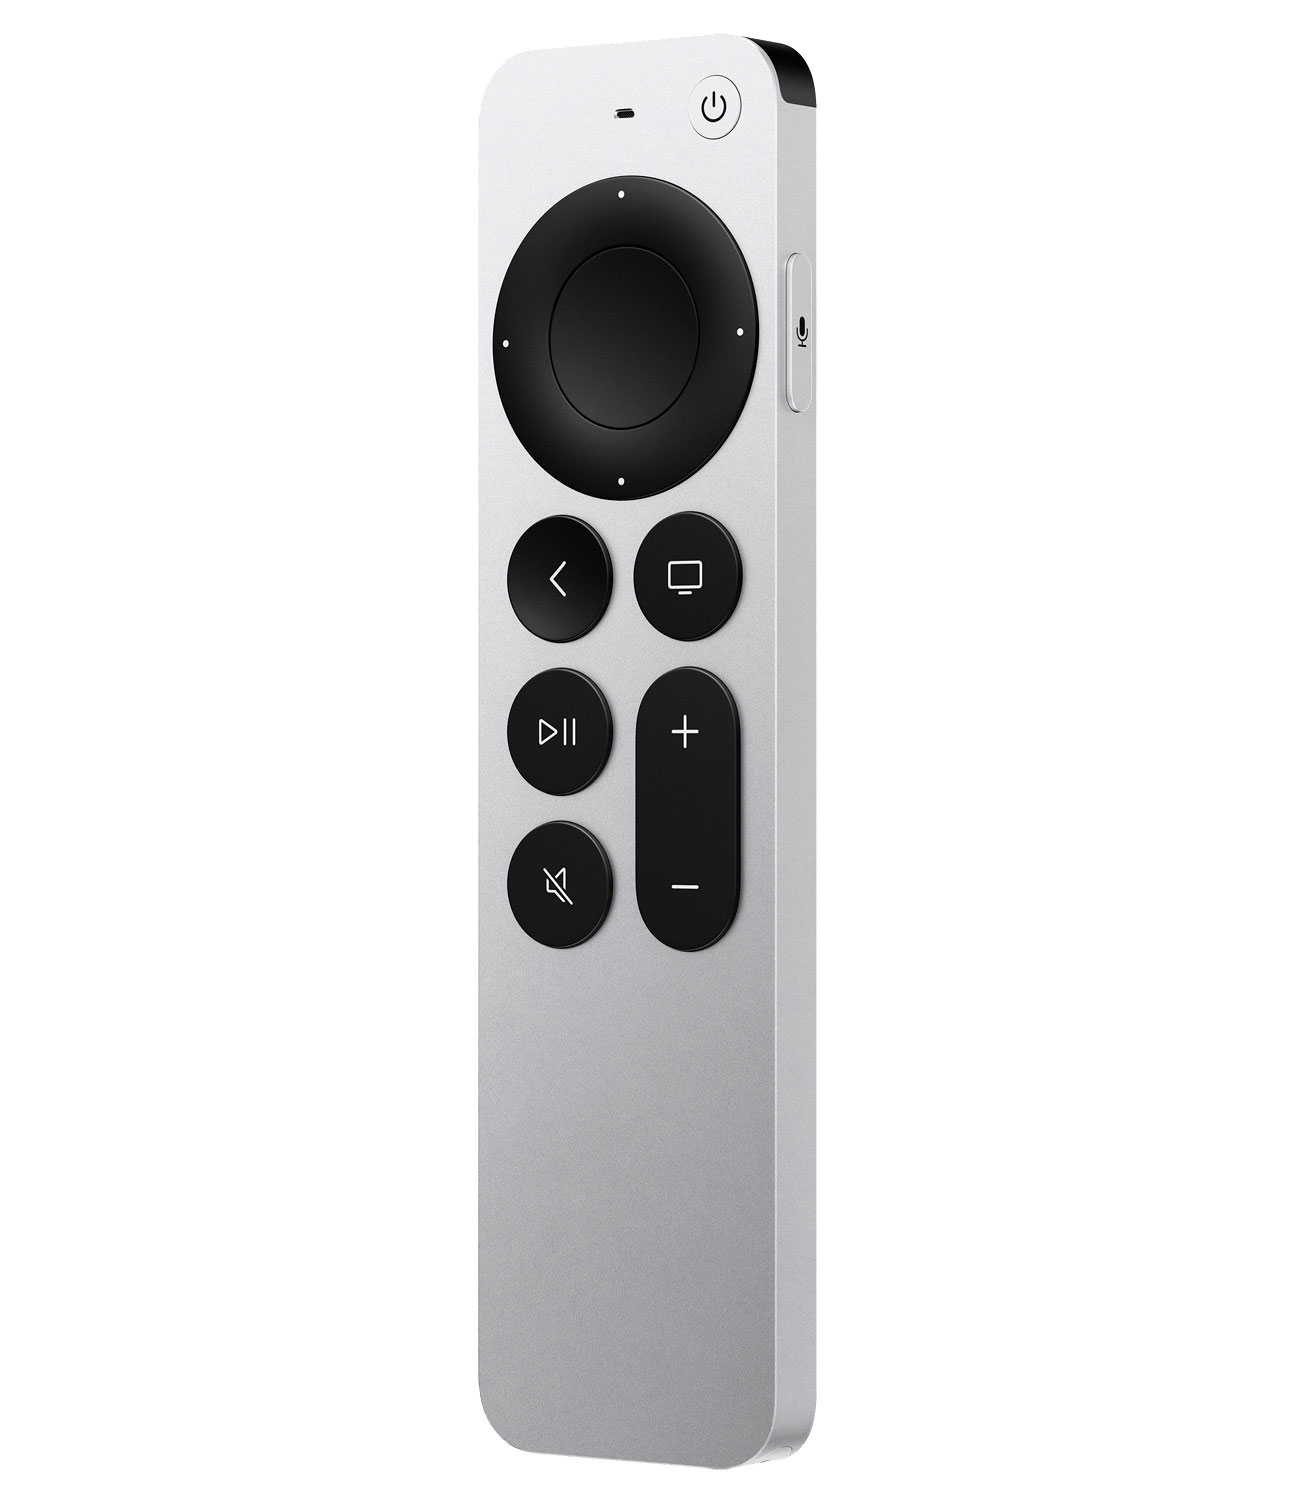 De nieuwe Apple TV 4K heeft ook een nieuwe afstandsbediening